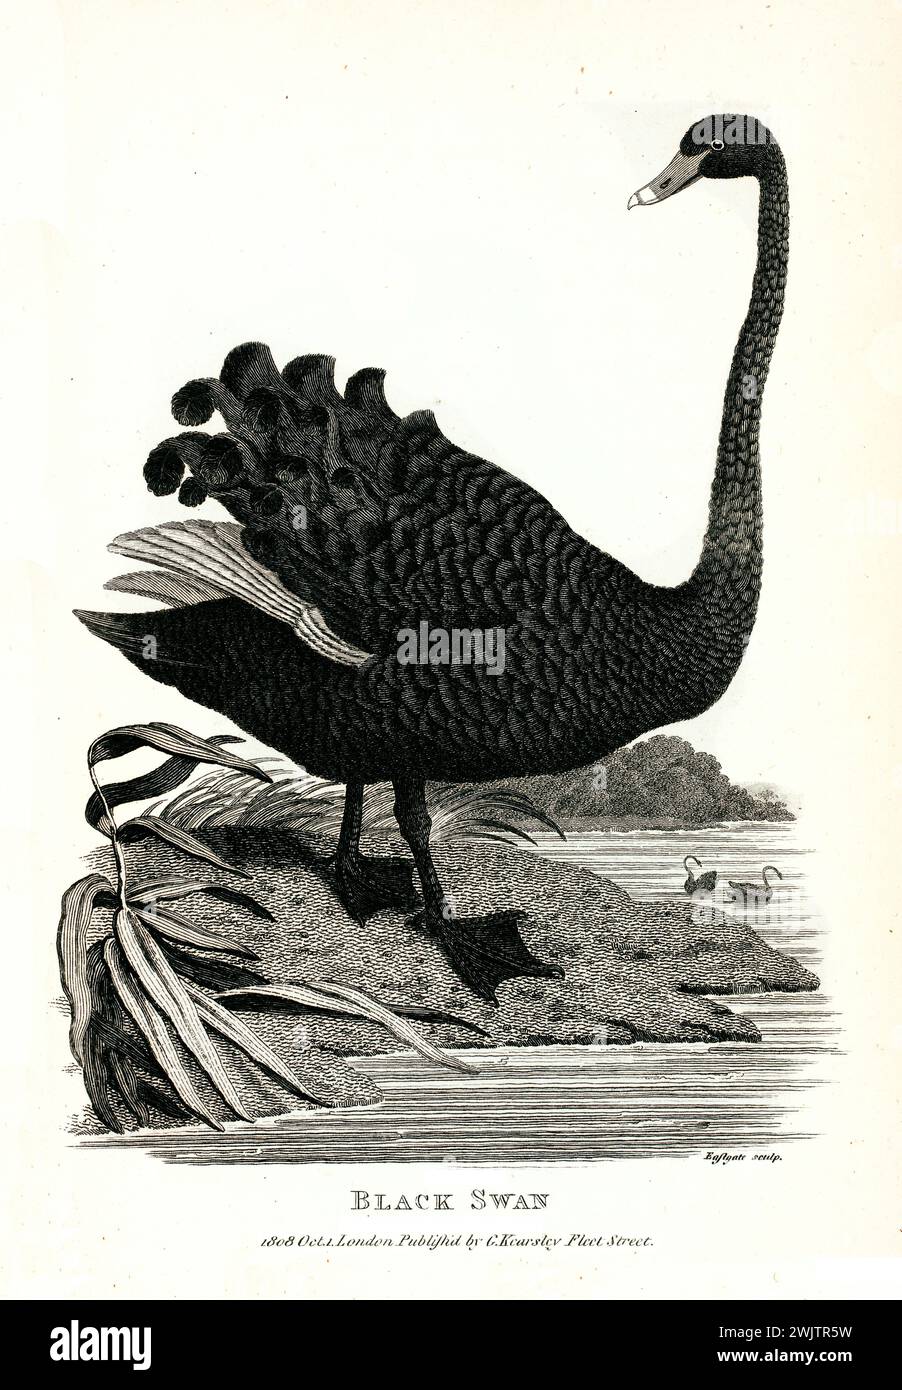 Ancienne illustration gravée de Black Swan. Créé par George Shaw, publié dans Zoological lectures, Londres, 1809 Banque D'Images